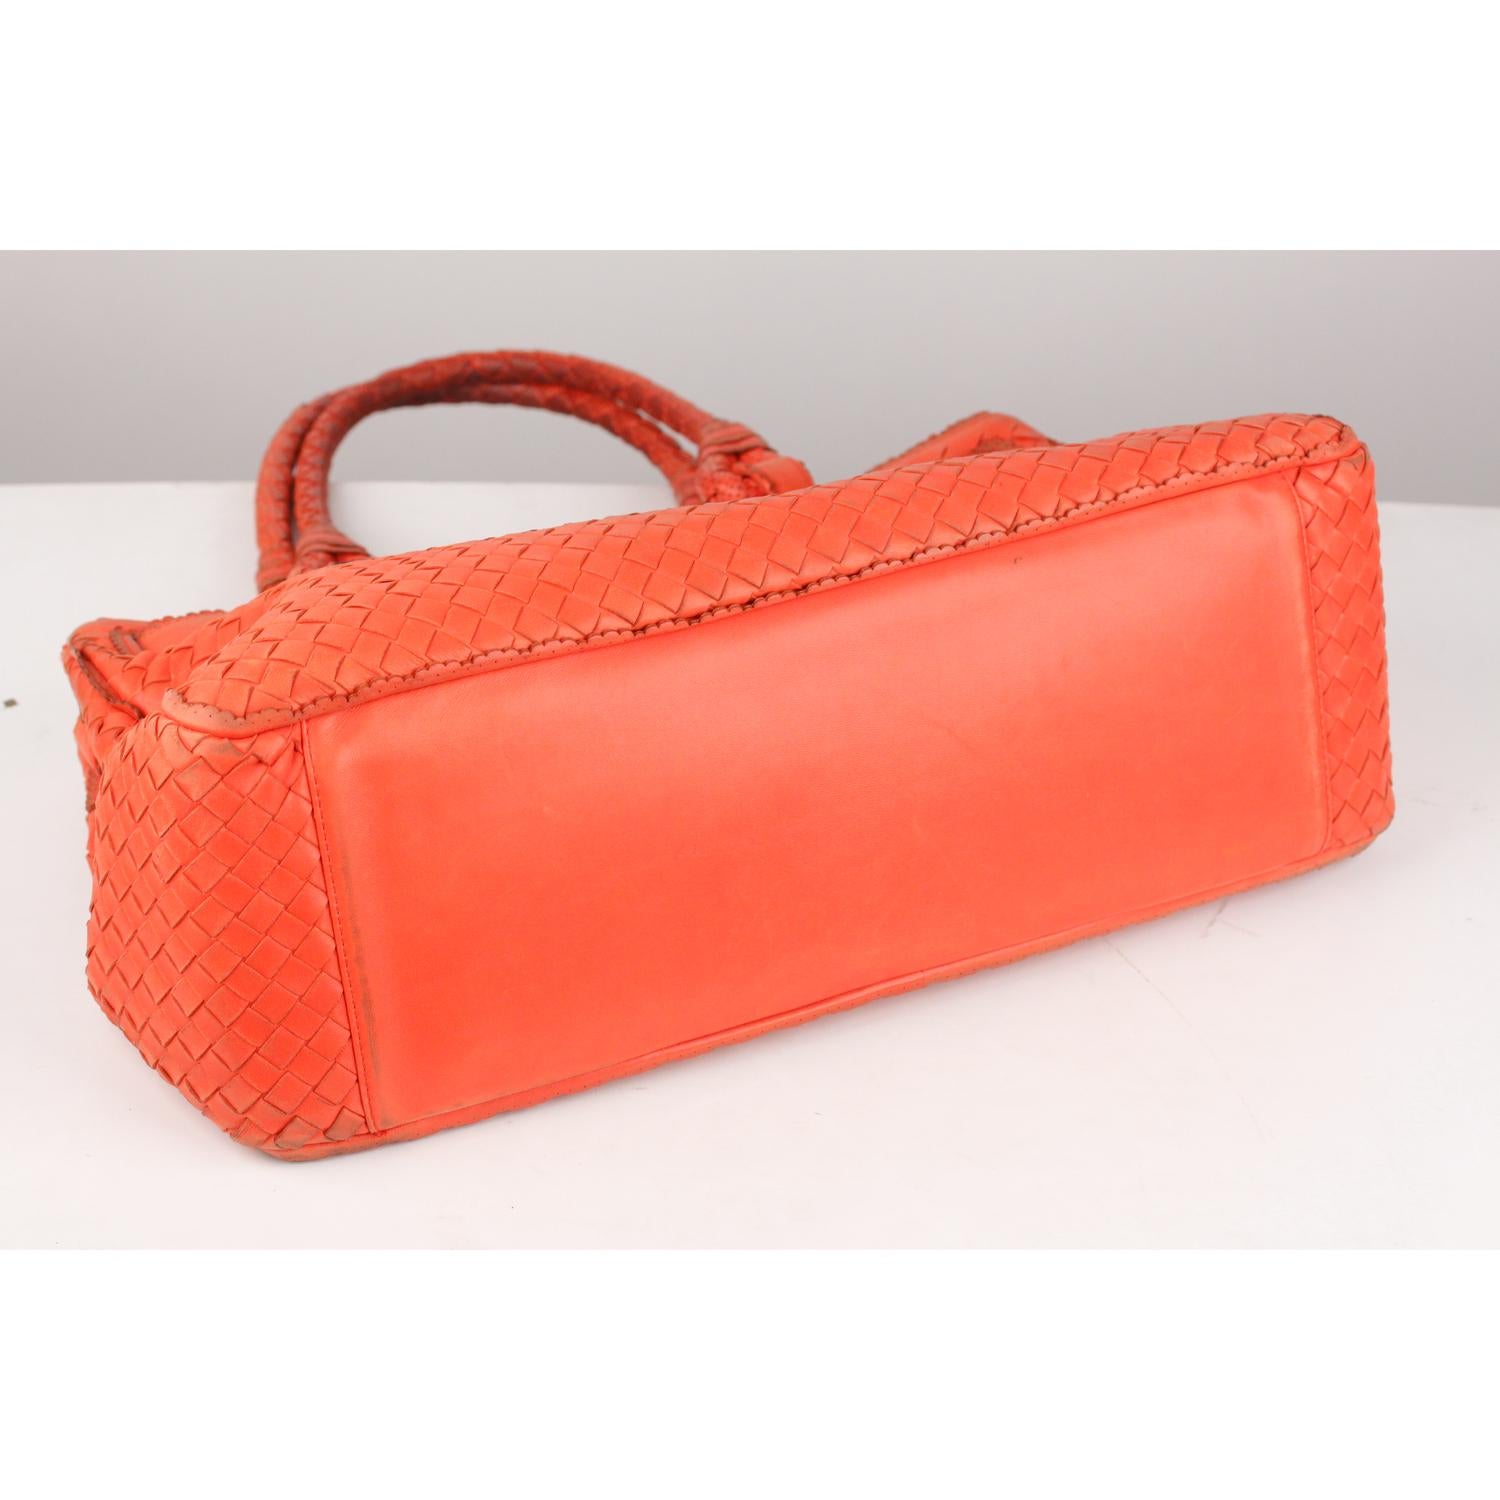 Women's Bottega Veneta Coral Intrecciato Woven Leather Bag Scalloped Trim